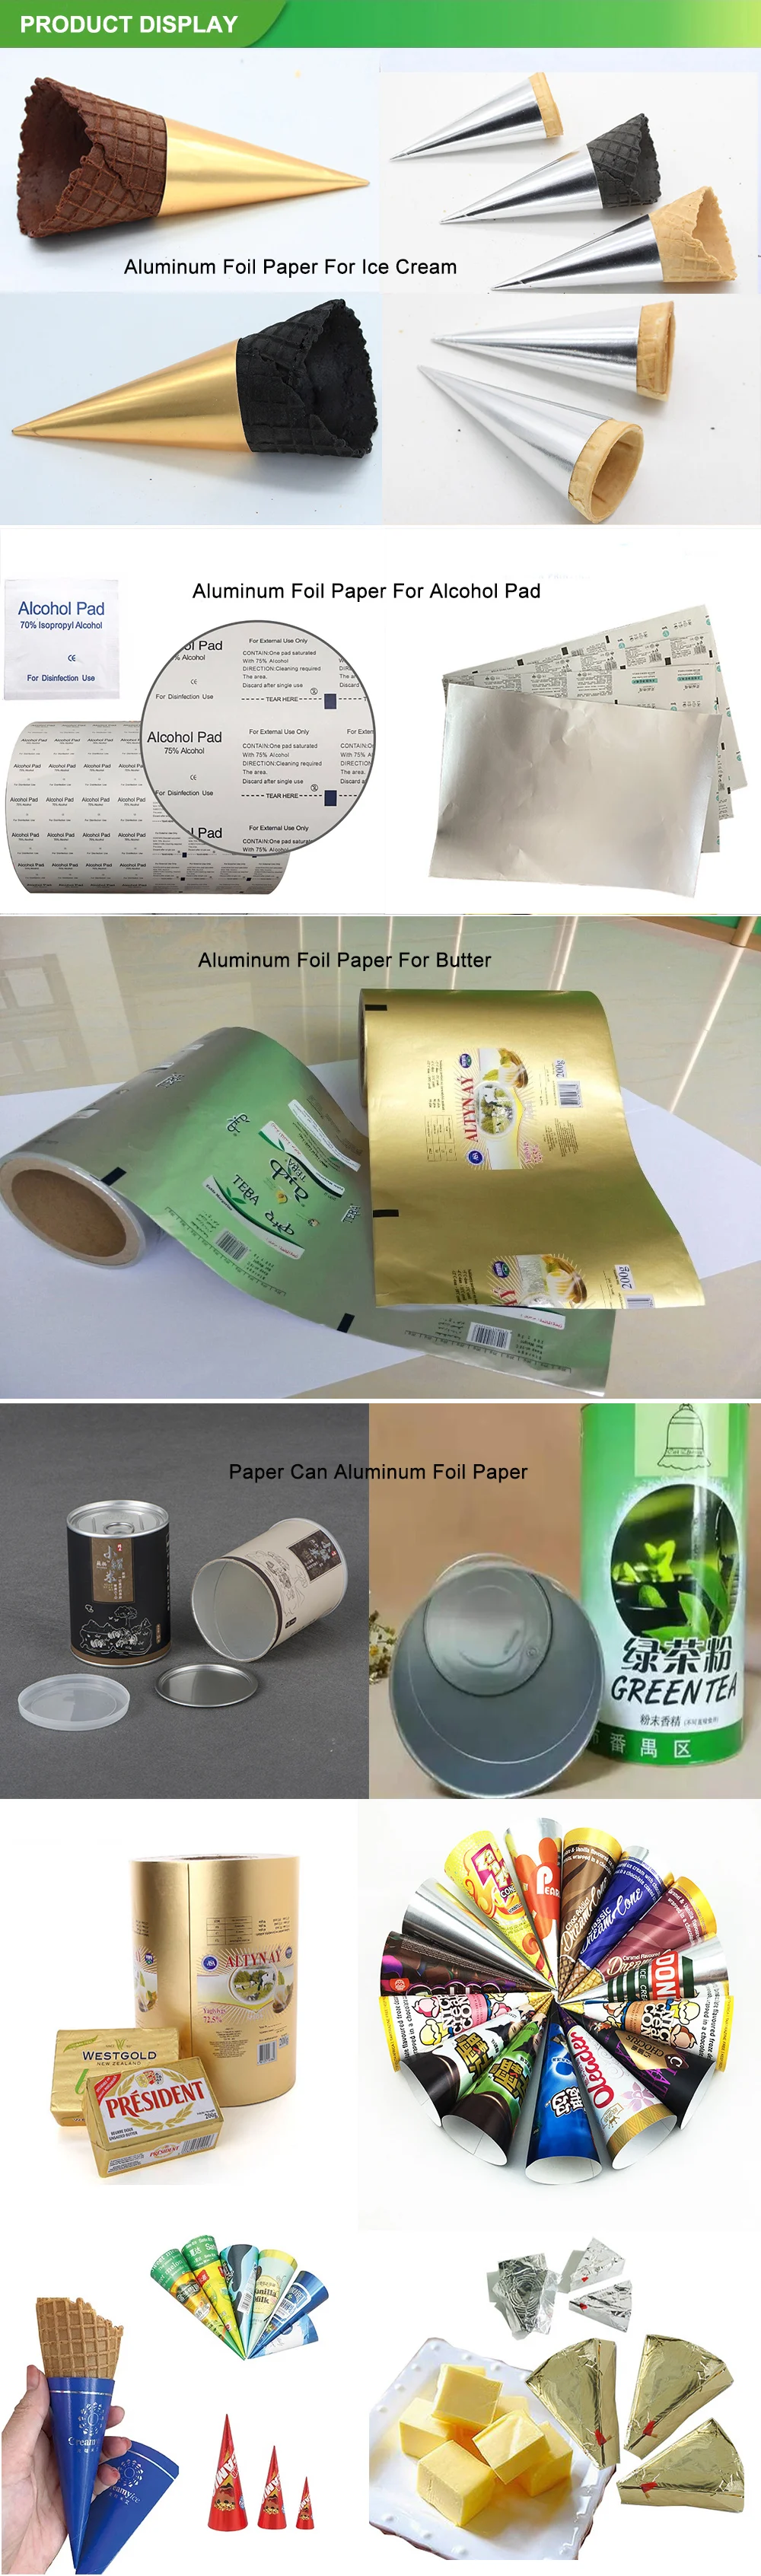 Paper Ice Cream Cone Holder Aluminium Foil Roll Food